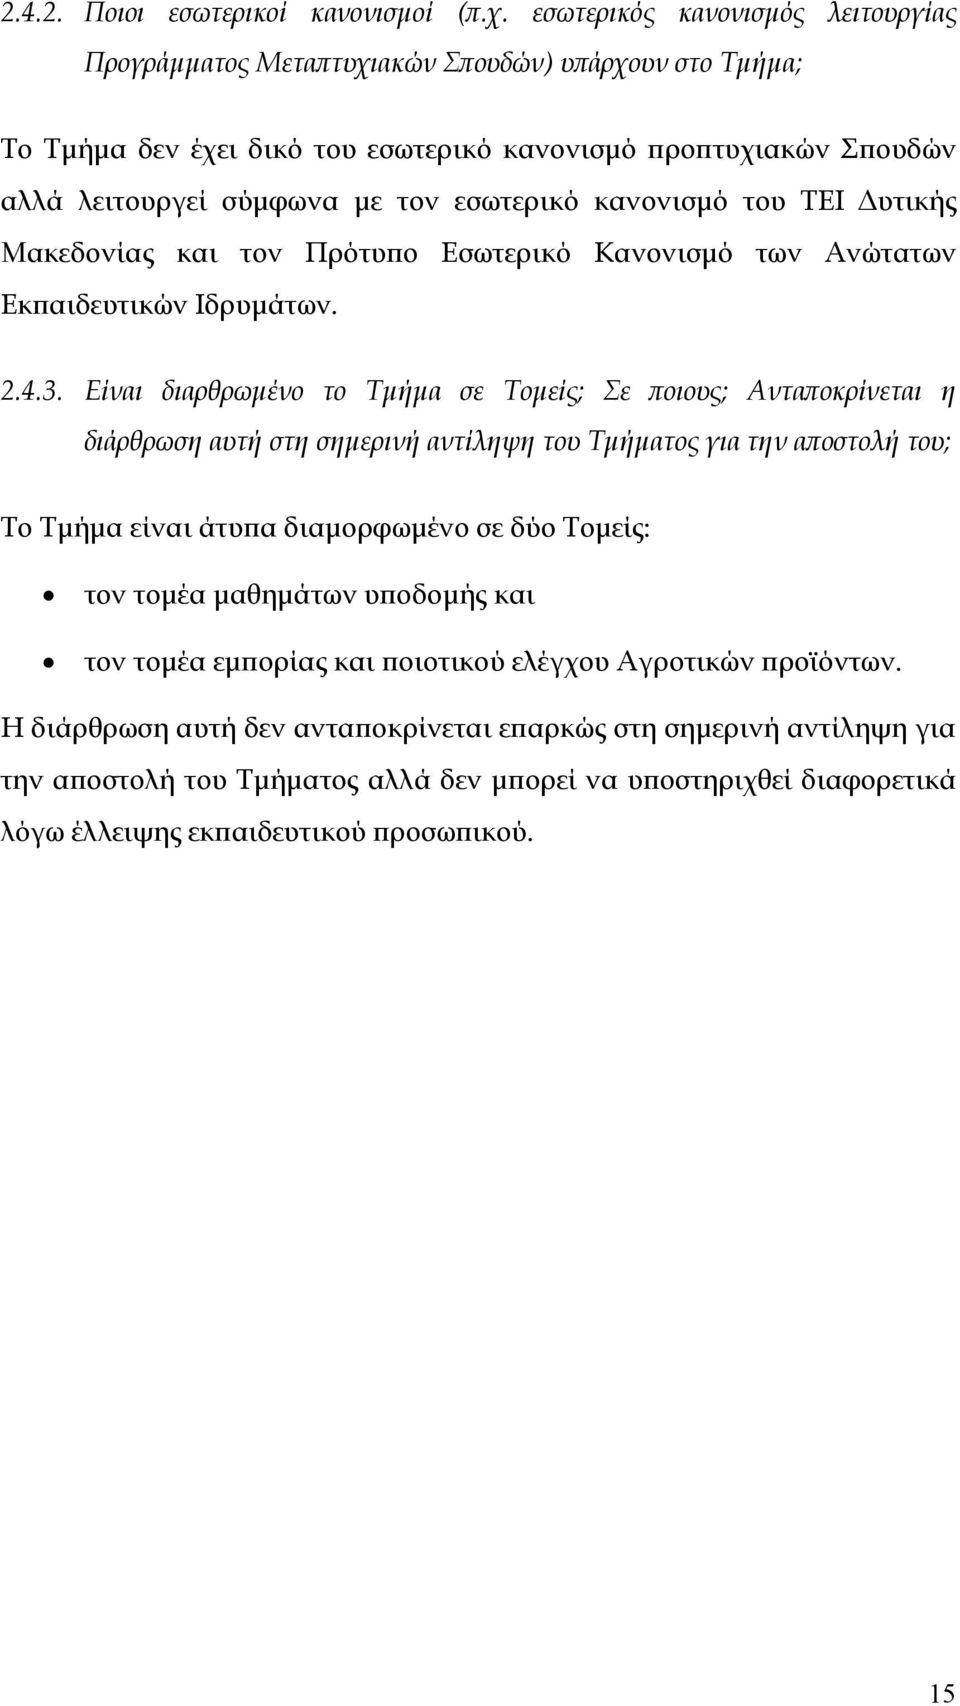 κανονισμό του ΤΕΙ Δυτικής Μακεδονίας και τον Πρότυπο Εσωτερικό Κανονισμό των Ανώτατων Εκπαιδευτικών Ιδρυμάτων. 2.4.3.